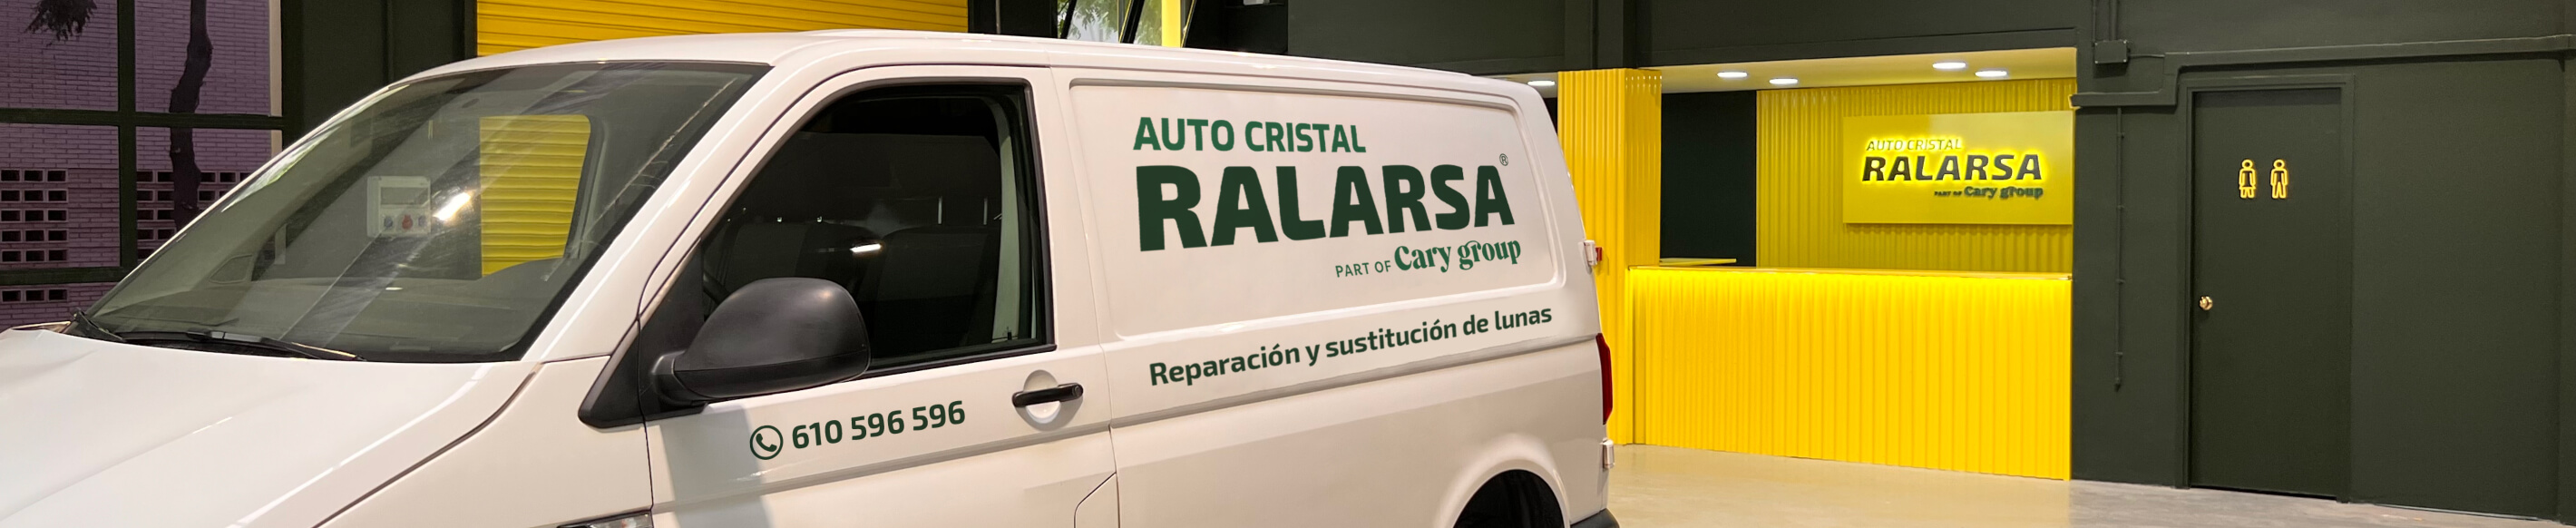 Elige el taller de cristales para automóviles Ralarsa